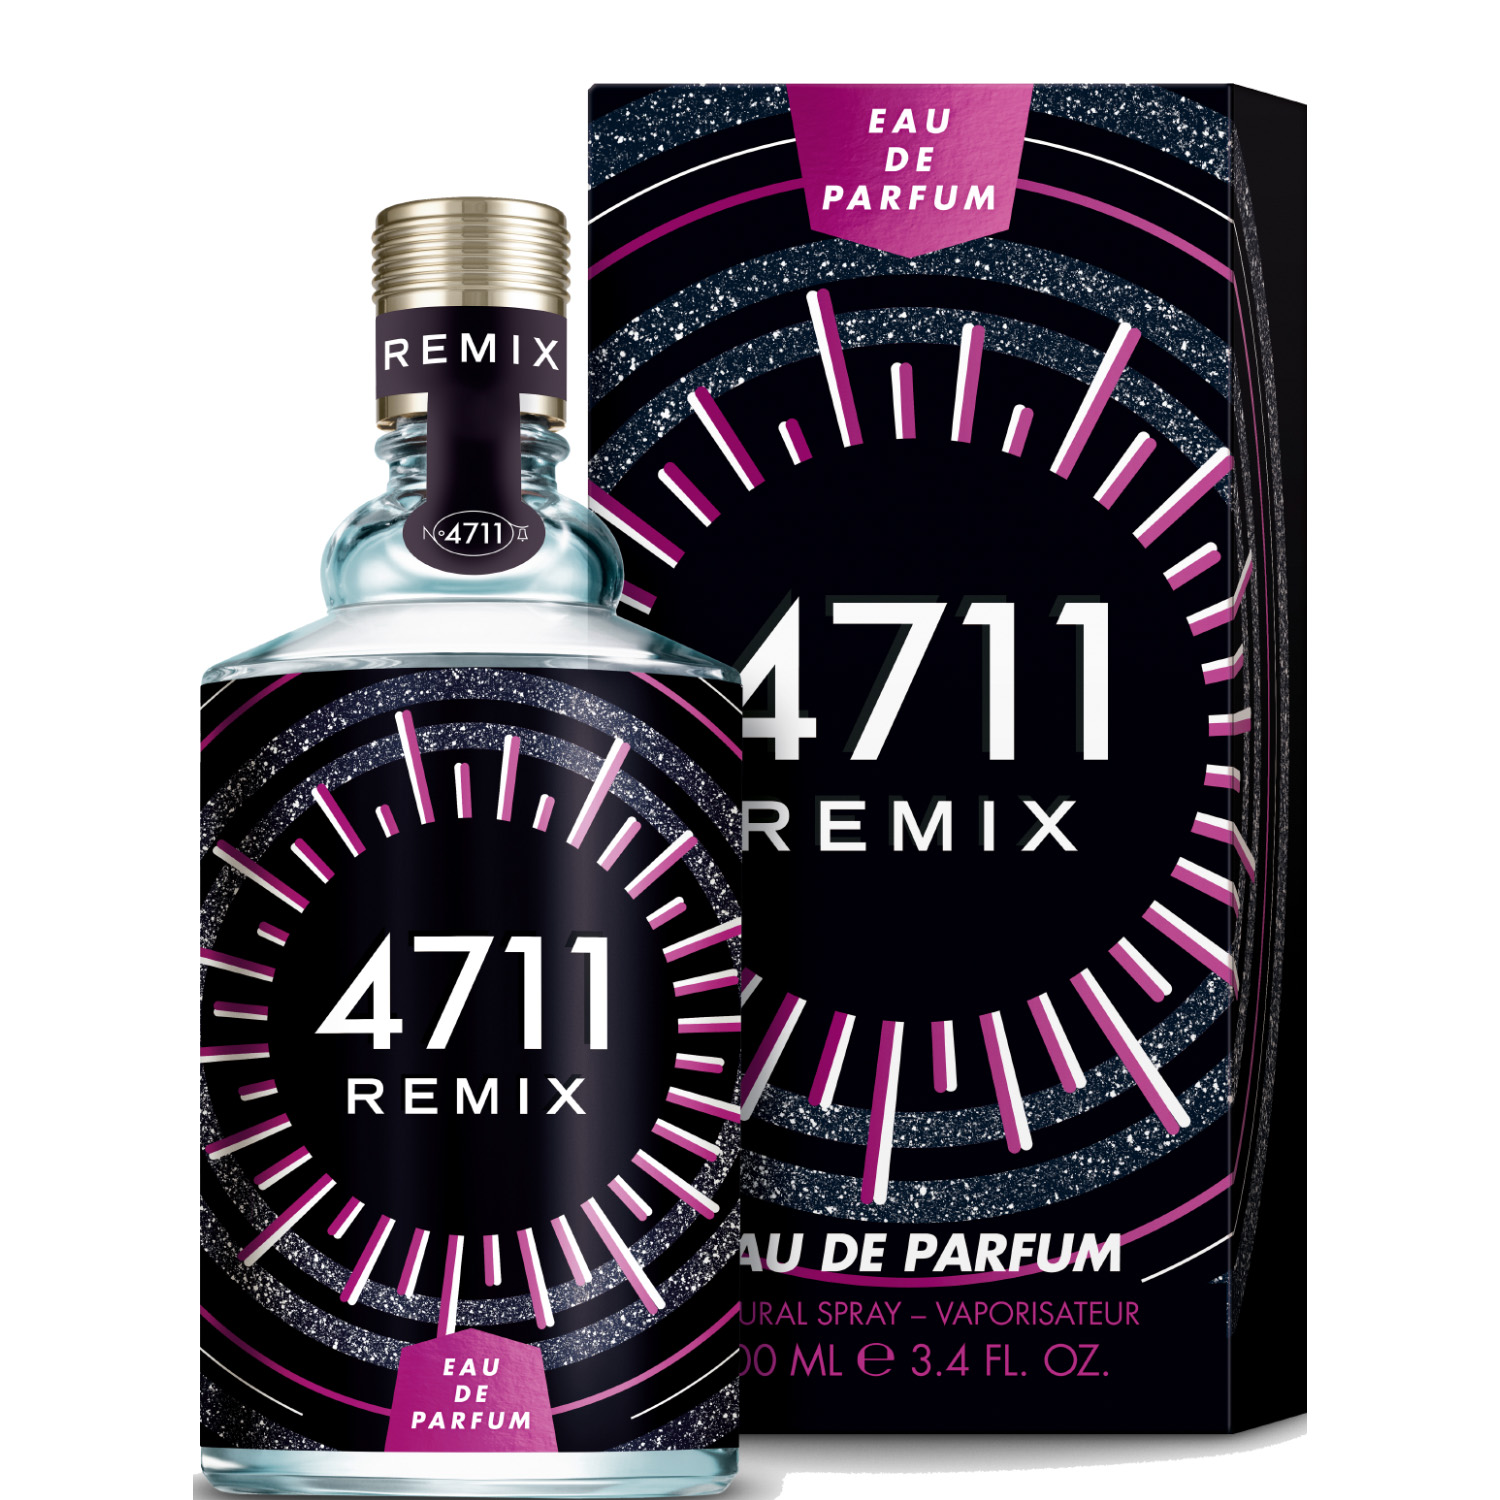 4711 Remix Electric Night Eau de Parfum 100ml